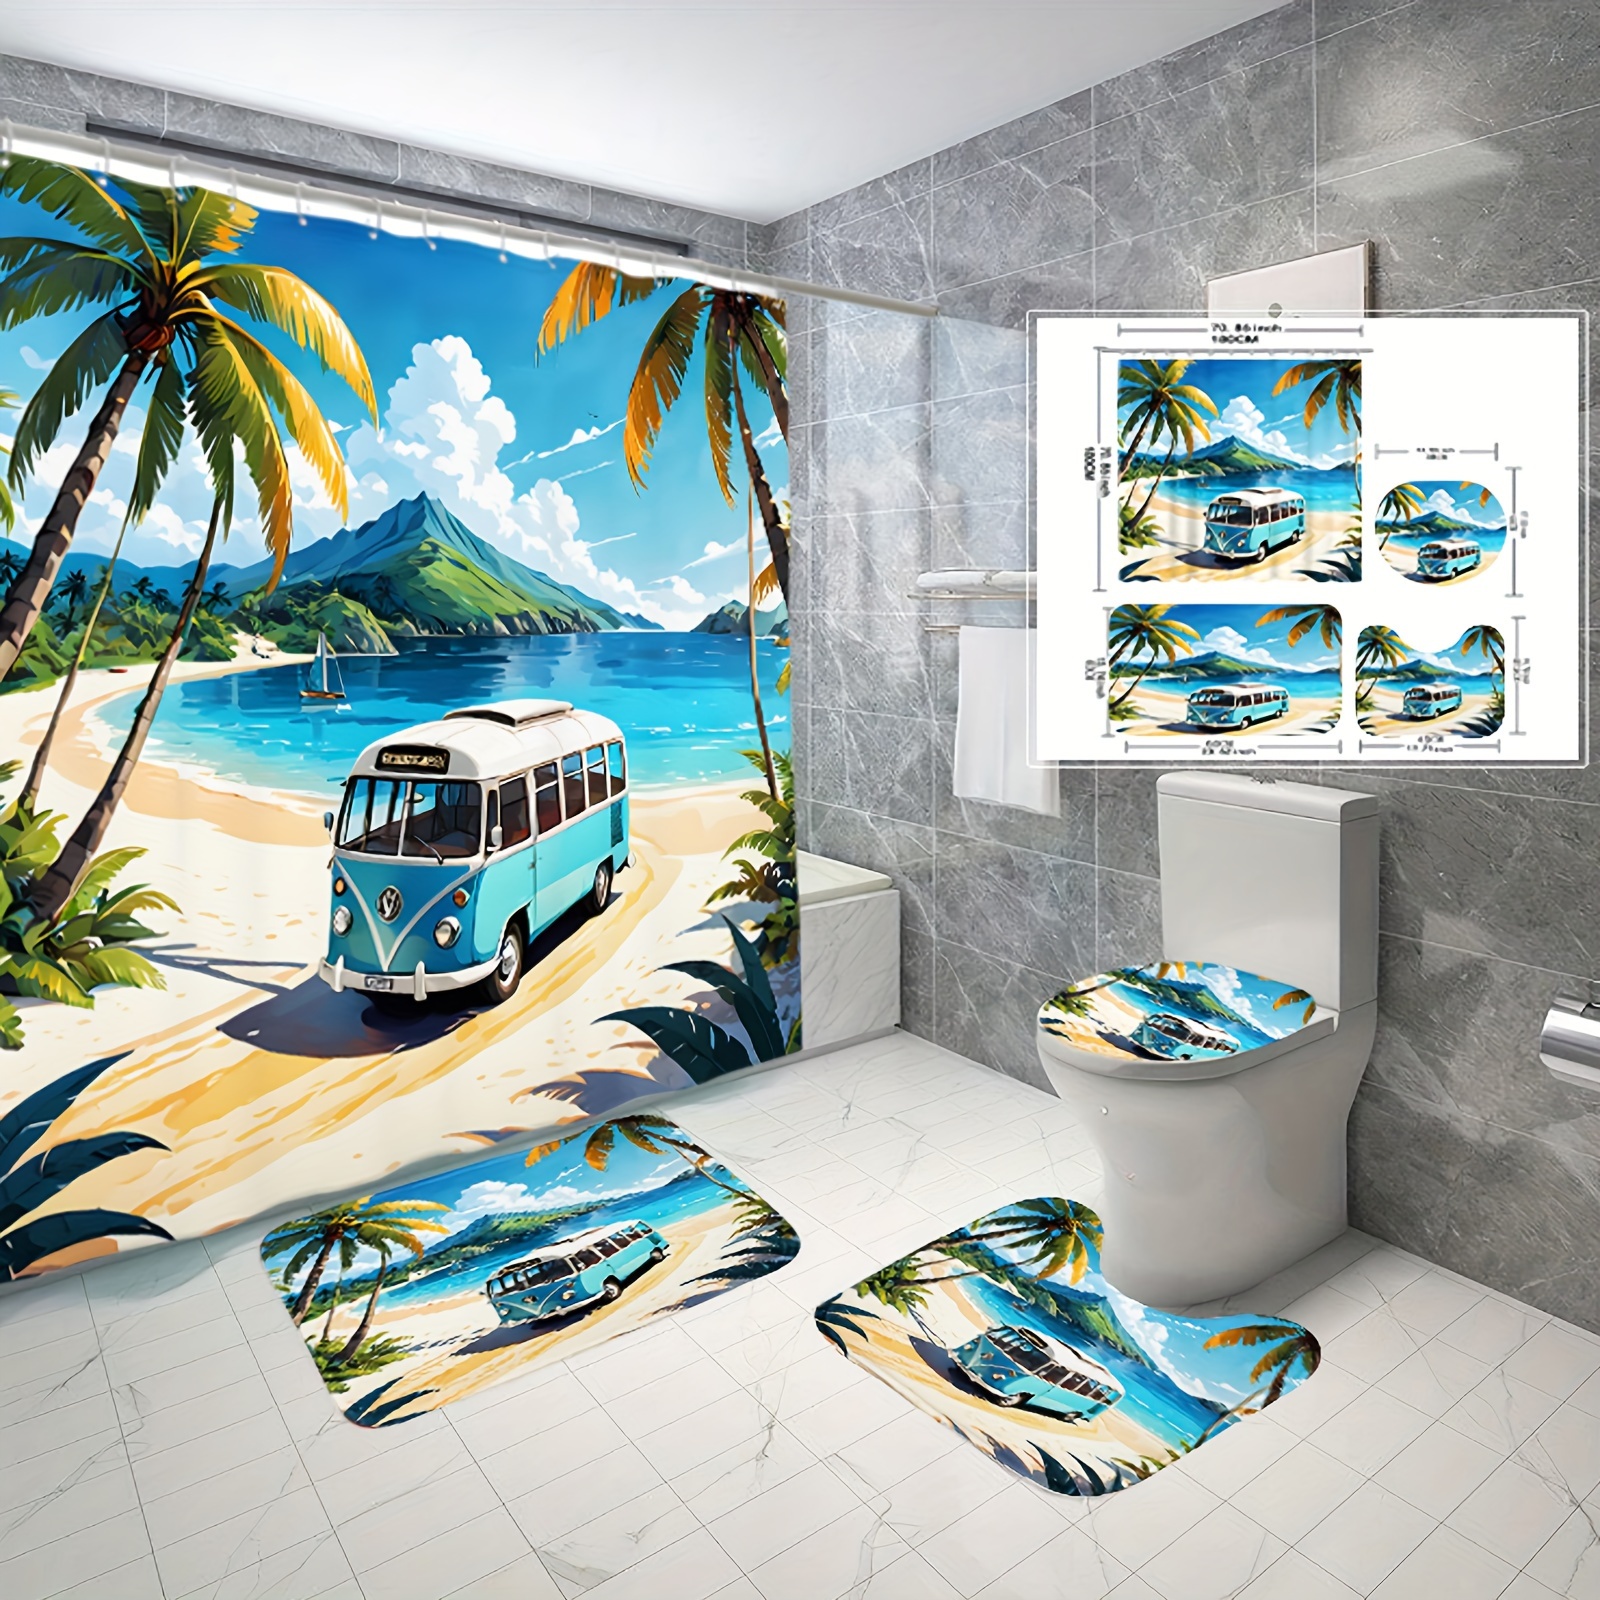 

Ensemble de rideau de douche et tapis de plage imprimé numérique, décoration moderne de salle de bain à la maison avec rideau de douche, tapis et couvercle de toilette